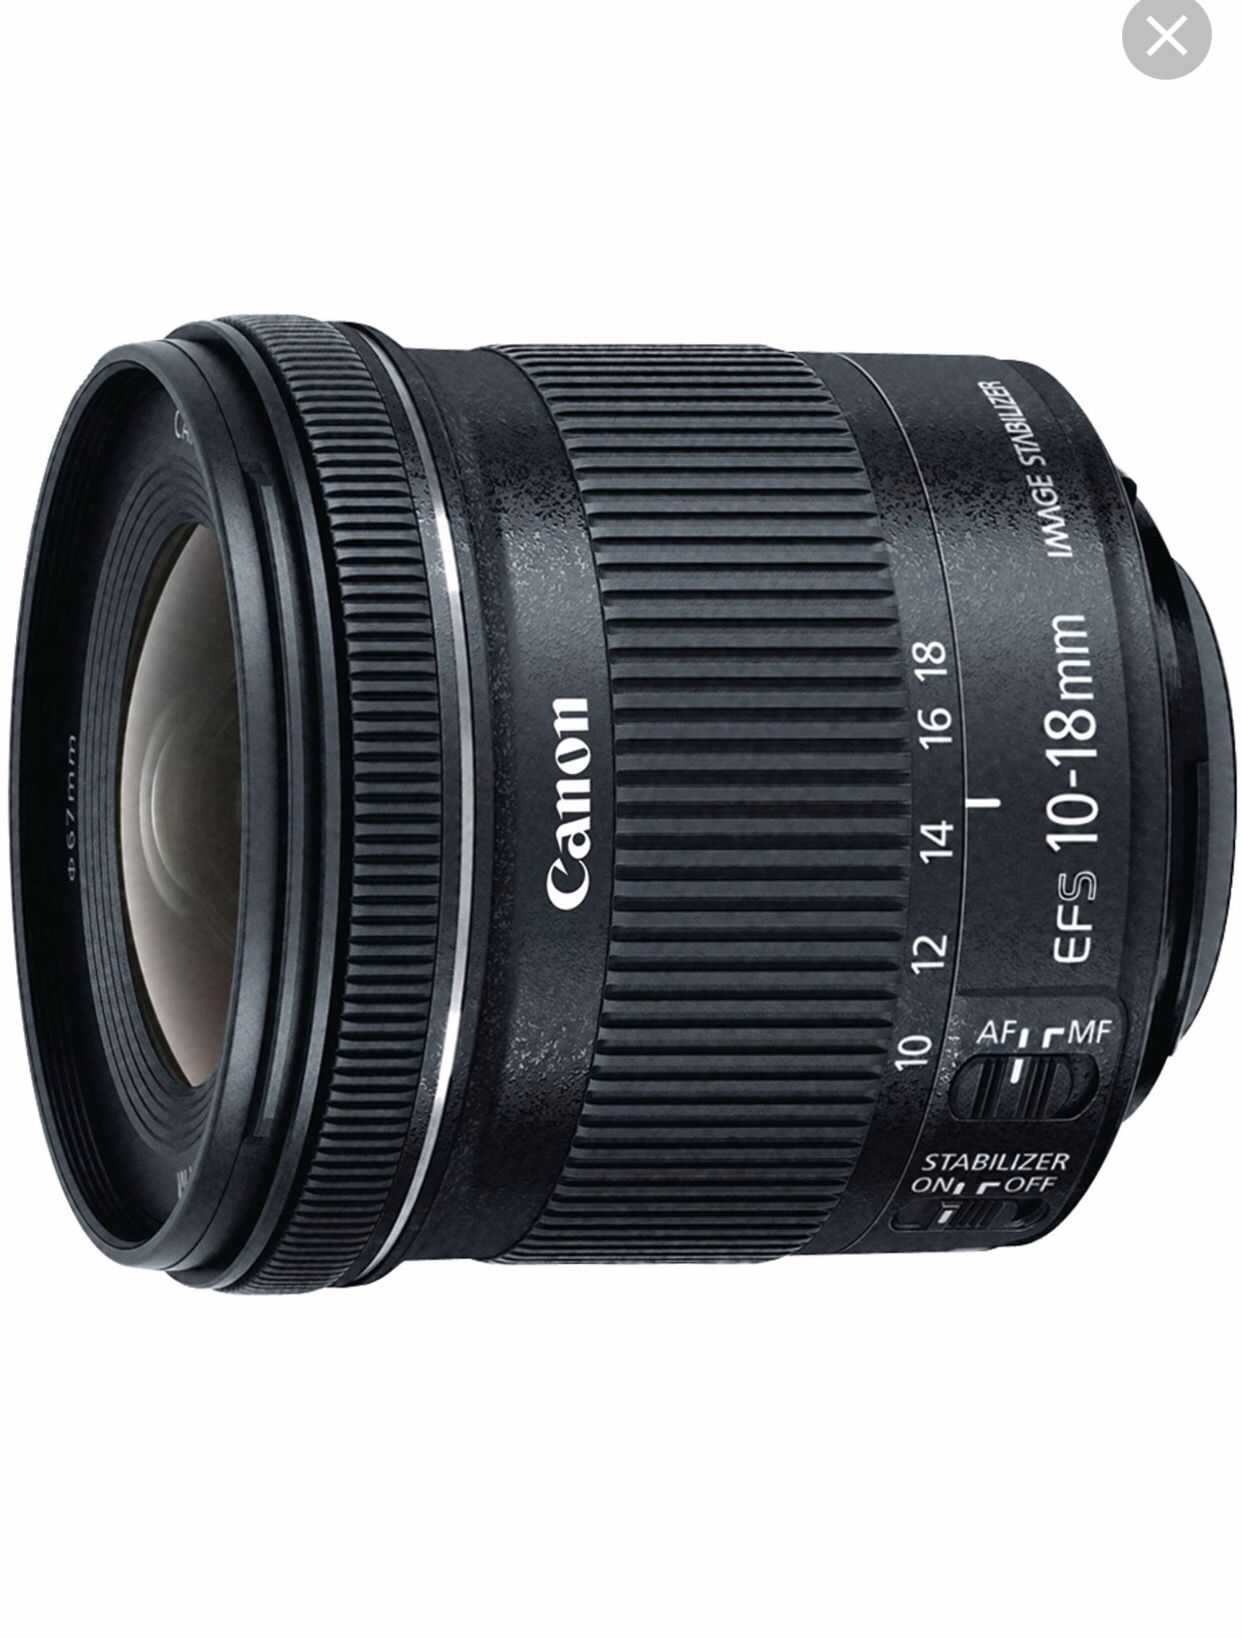 Cannon zoom lens EF-S 10-18mm lens